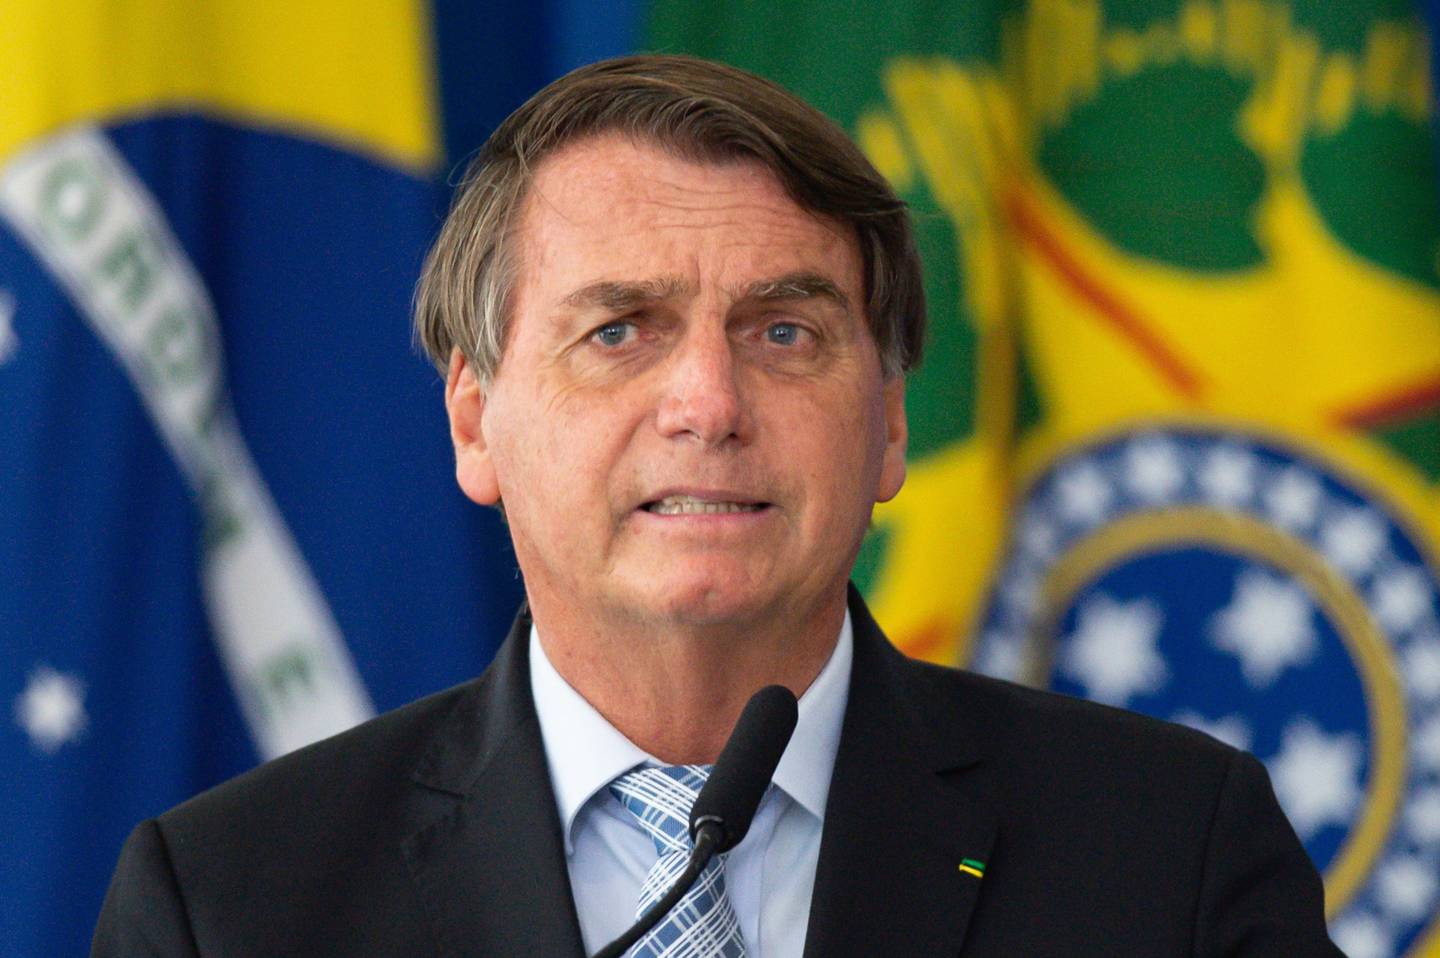 El presidente de Brasil, Jair Bolsonaro, ha resentido una baja en sus niveles de popularidad debido a lo que los brasileños consideran un pobre manejo de la crisis sanitaria por la pandemia del coronavirus.